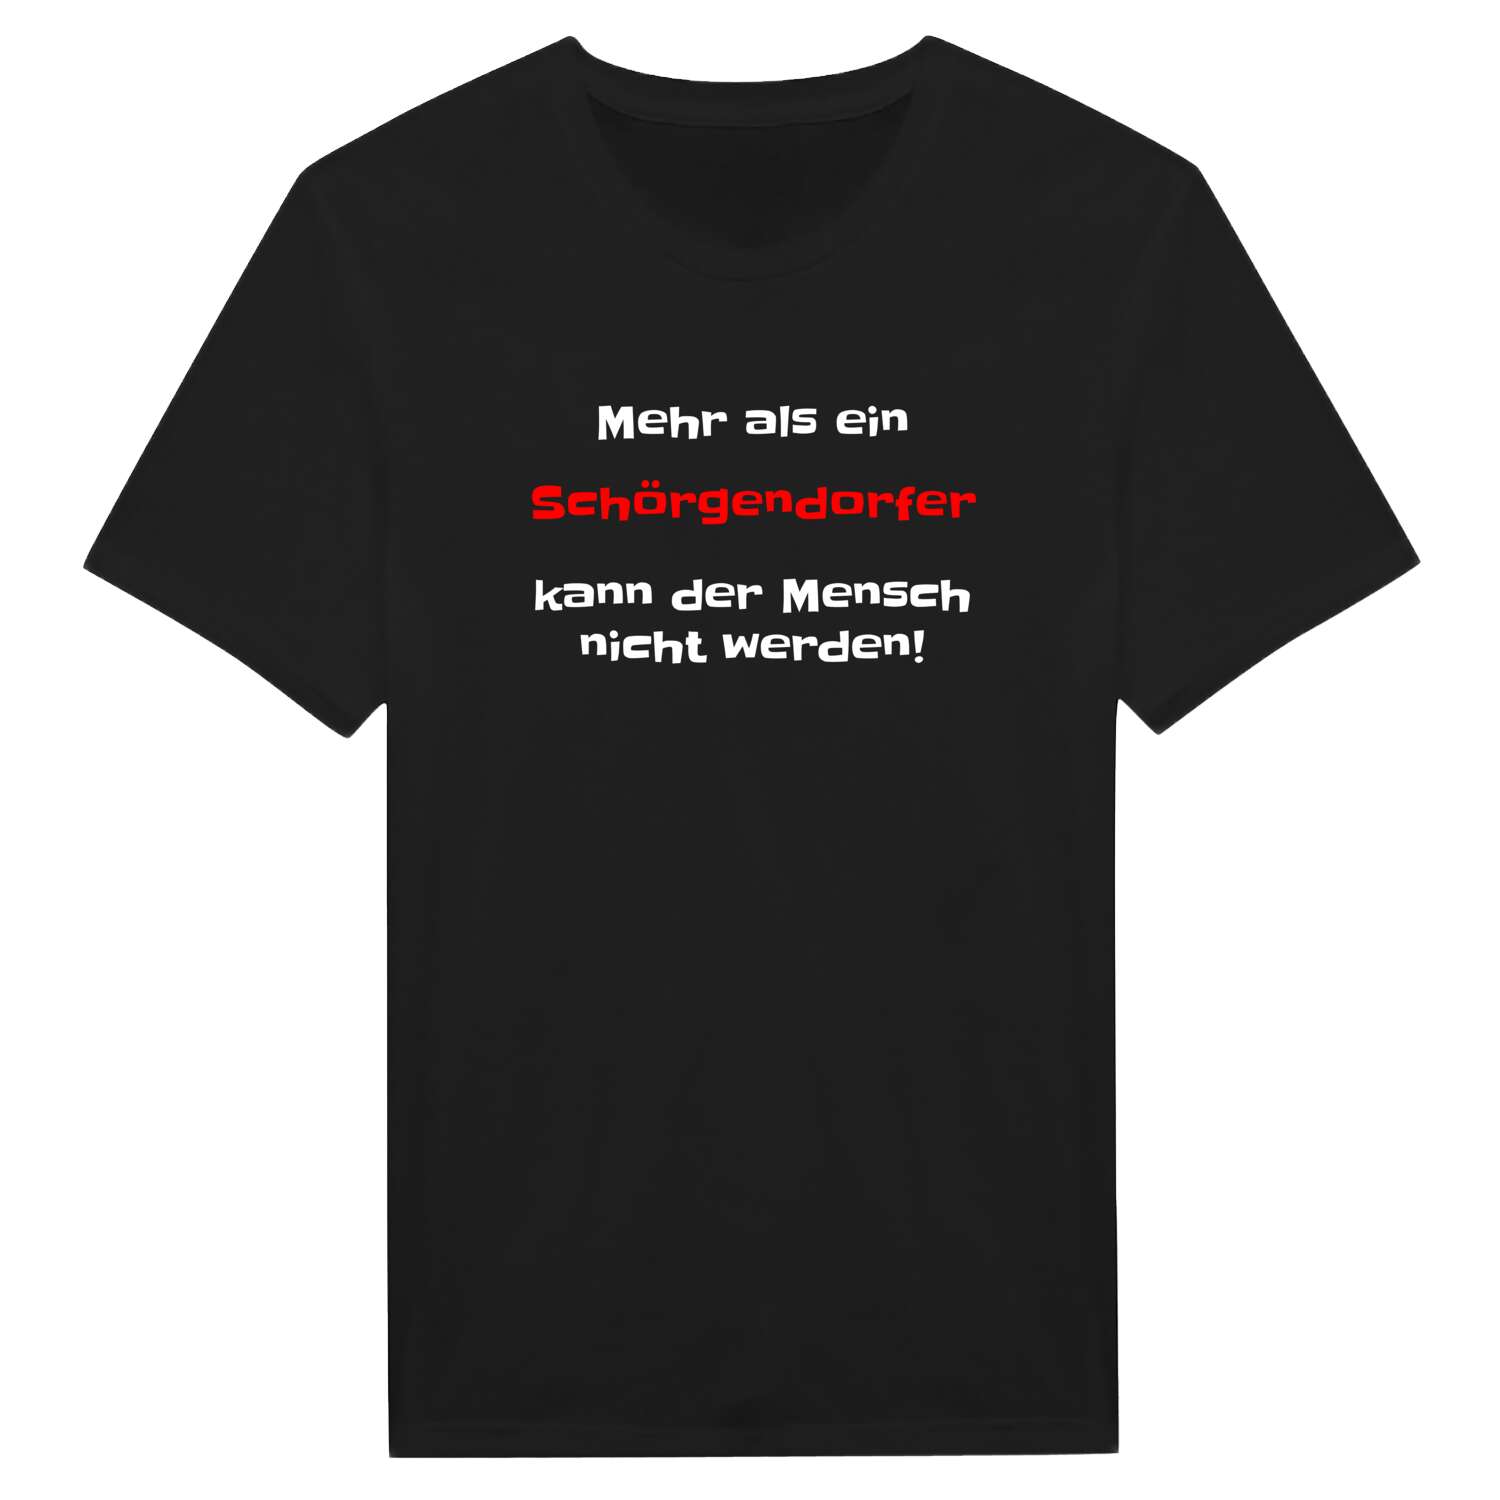 Schörgendorf T-Shirt »Mehr als ein«